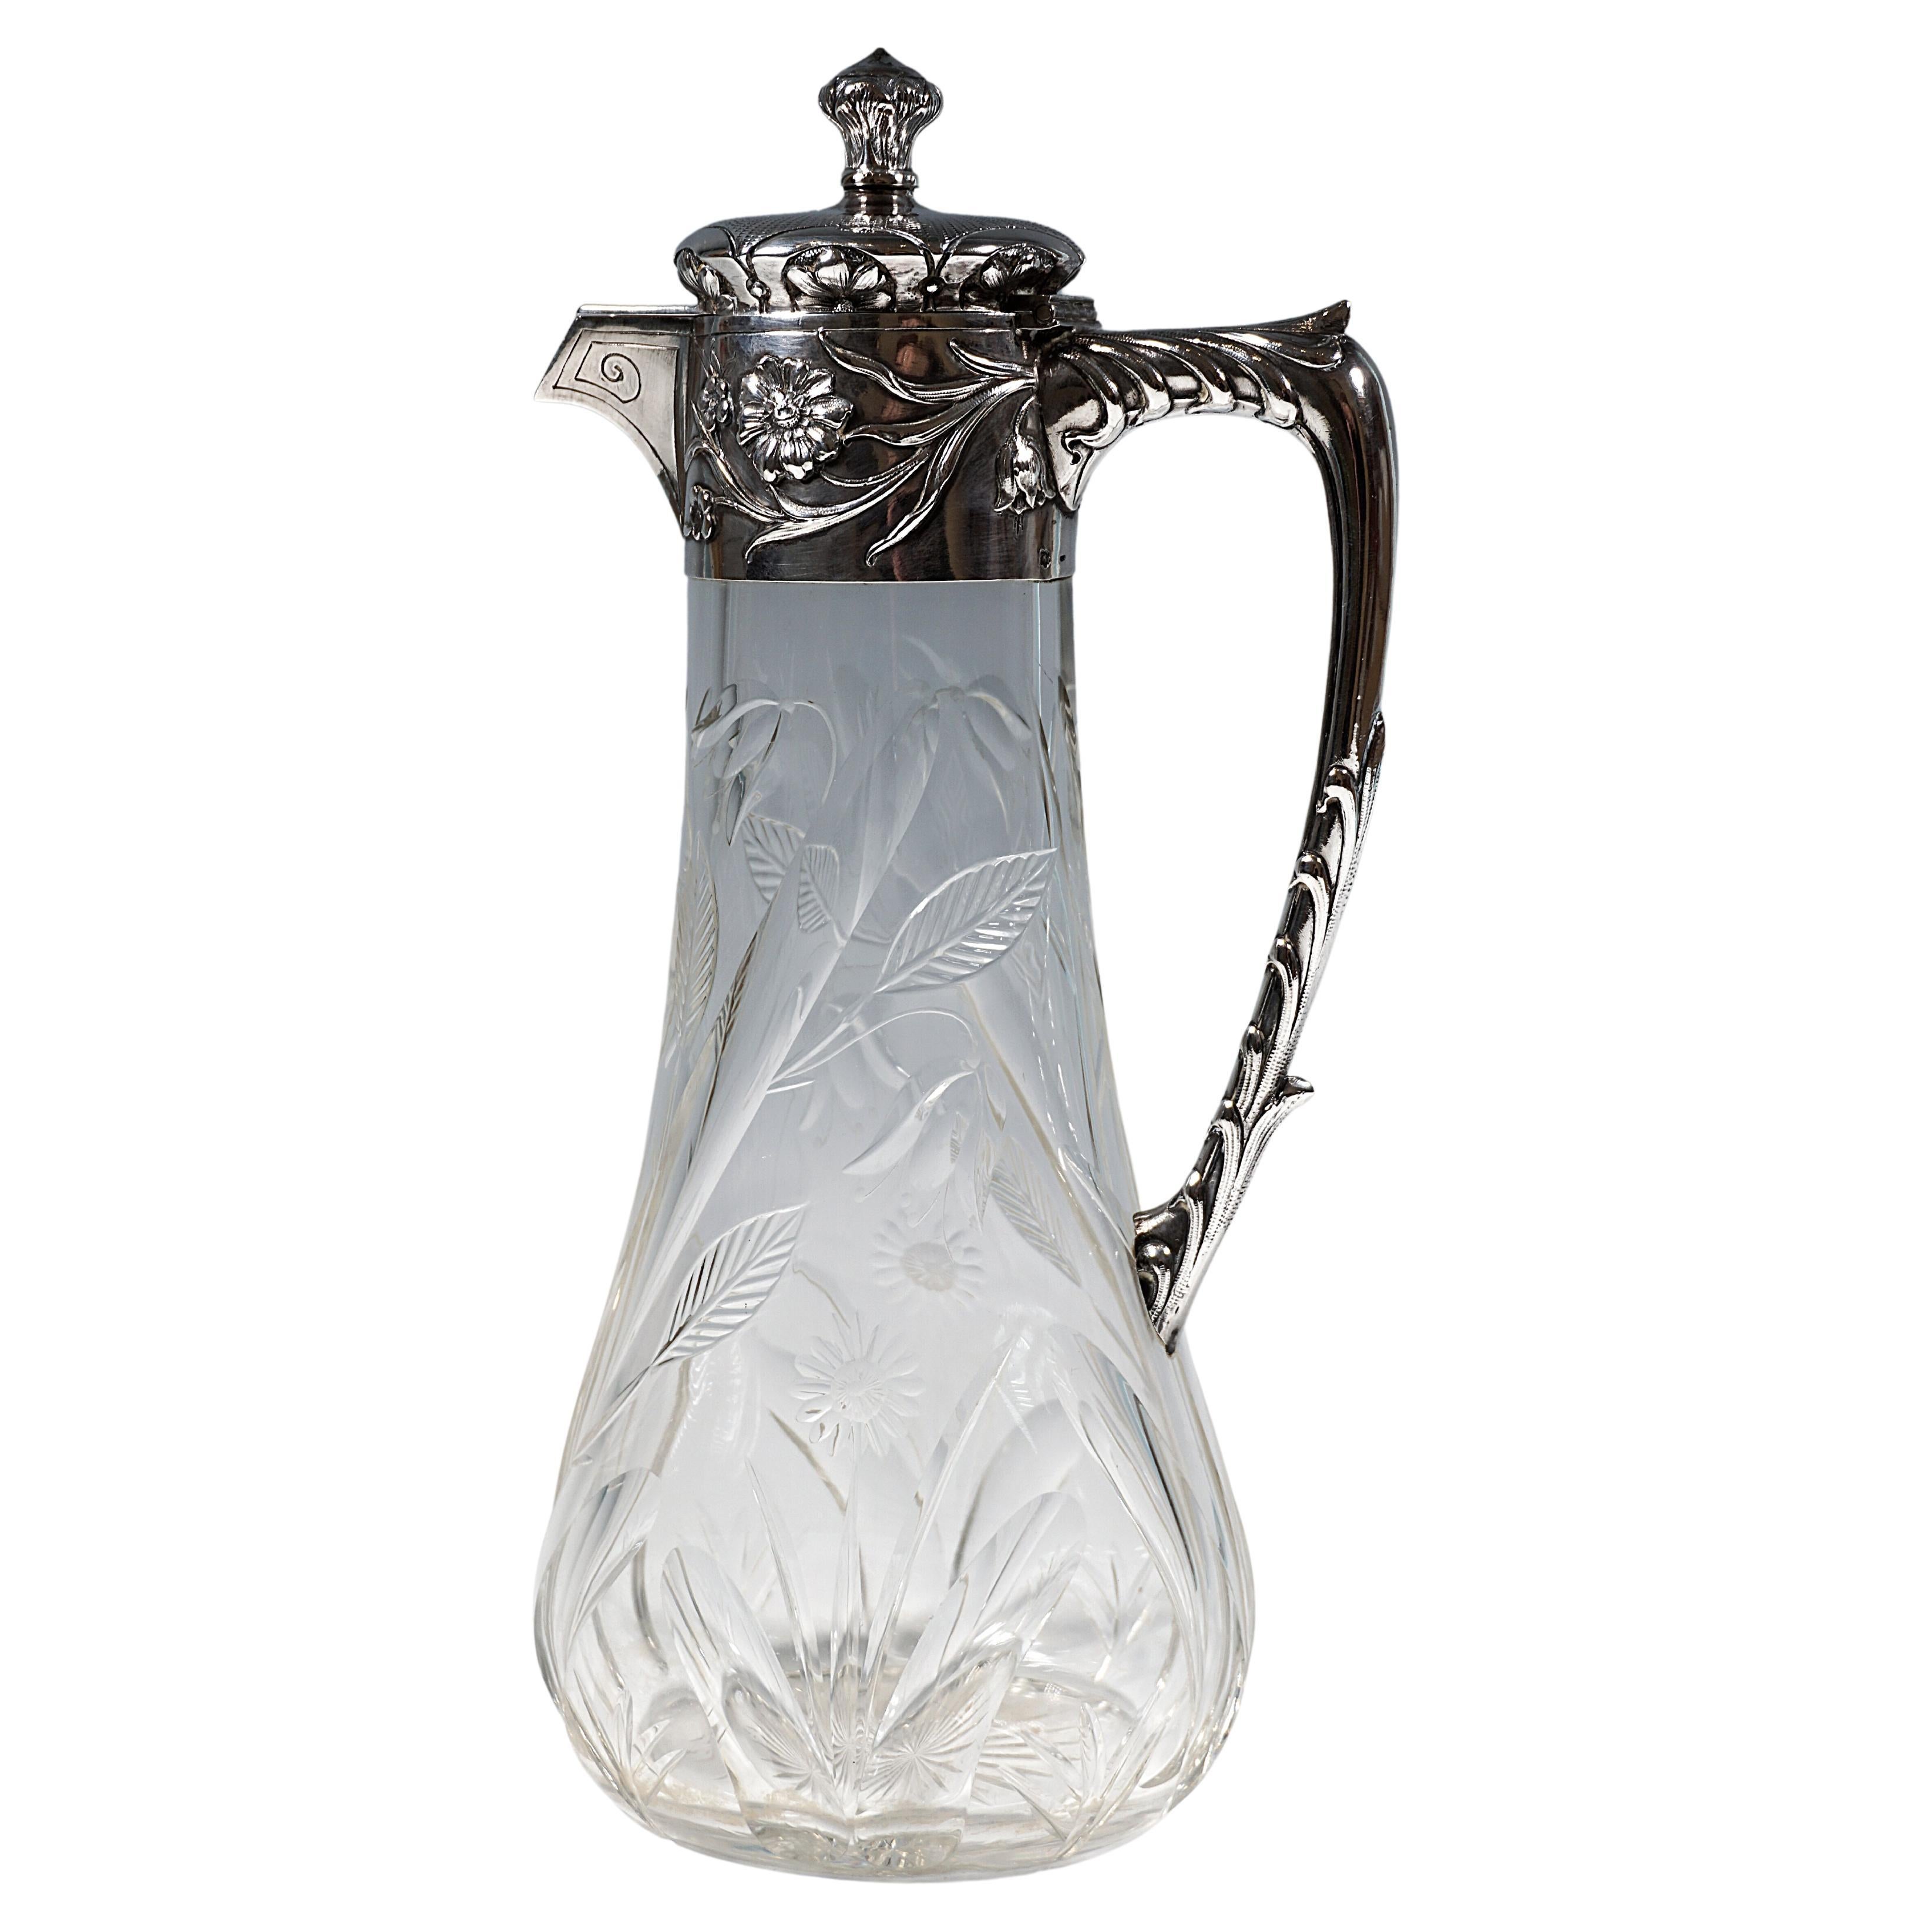 Jugendstil-Karaffe aus geschliffenem Glas mit Silbermontierung, von Vincenz Carl Dub, Wien 1900